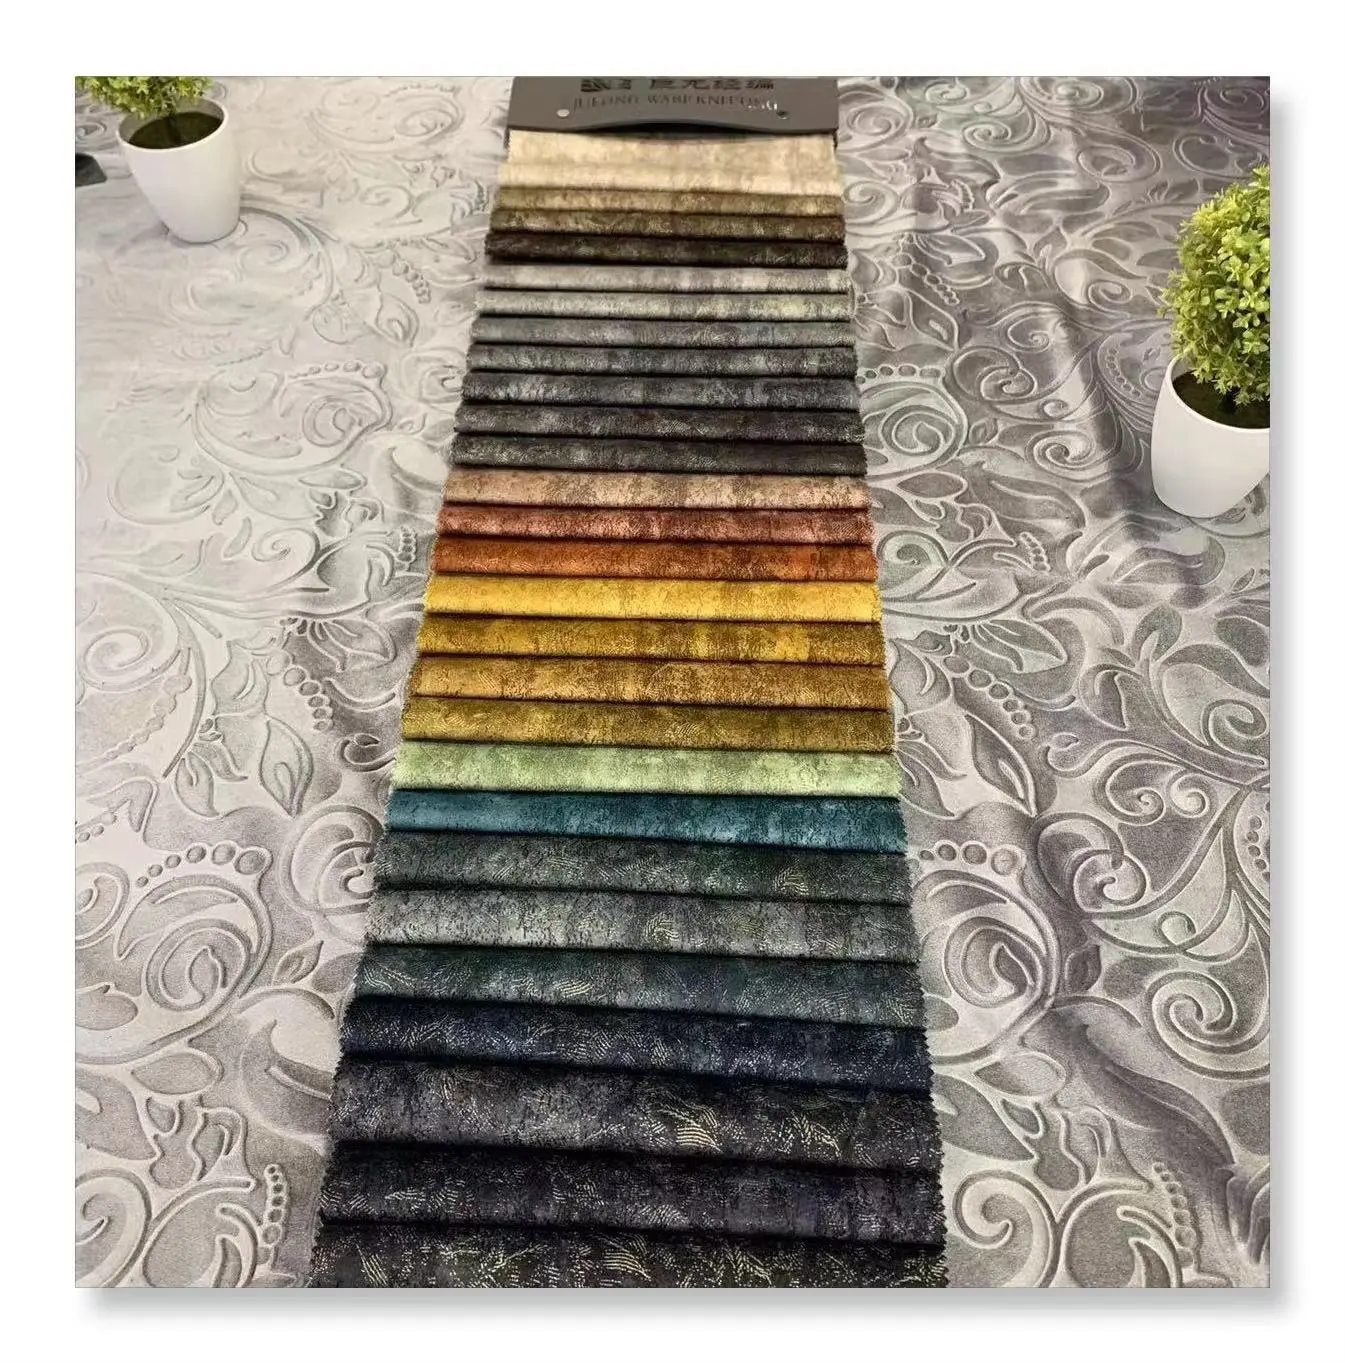 Jl24252-thiết kế đẹp chất lượng tốt 100% polyester keo nổi sofa cho vải dệt